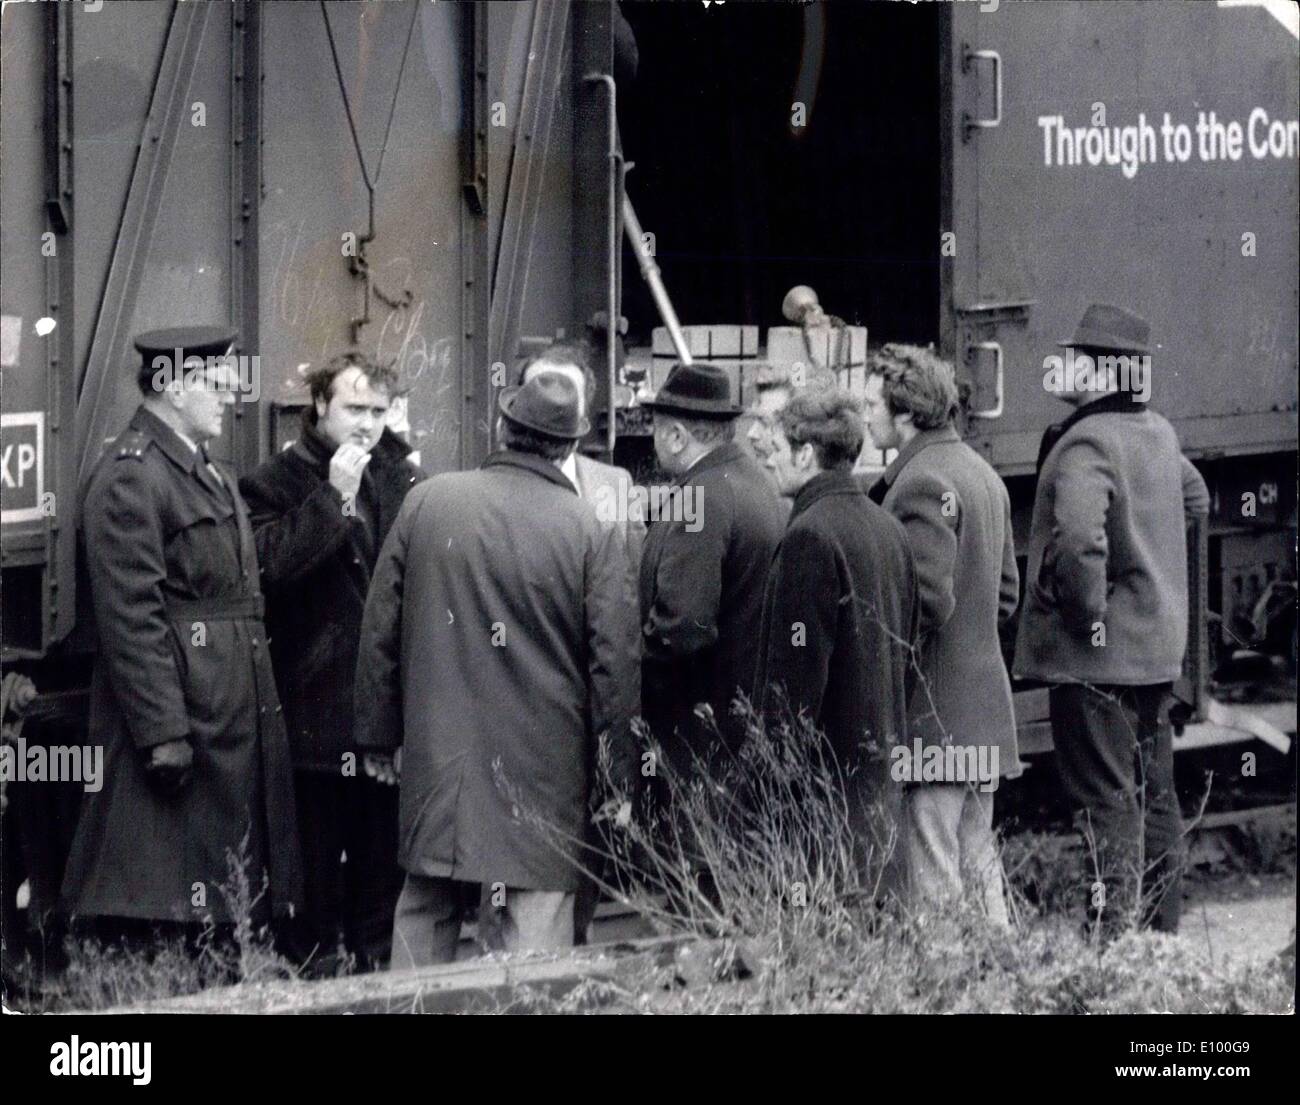 Le 28 janvier 1972 - Lingots d'argent volé dans le train : ?35 000 lingots d'argent d'une valeur a été volé dans un train de marchandises à destination de Rome le mercredi soir. Le raid a été découvert lorsque le train, qui transportait de l'argent d'une valeur de 250 000 ?, fait un arrêt prévu à l'Hither Green, dans le sud de Londres, et on a remarqué qu'une des portes dans le lingot wagon était ouvert environ neuf pouces et les coutumes et les joints de fer ont été brisées. Photo montre la scène à Hither Green alors que le wagon était beinv examiné hier. Banque D'Images